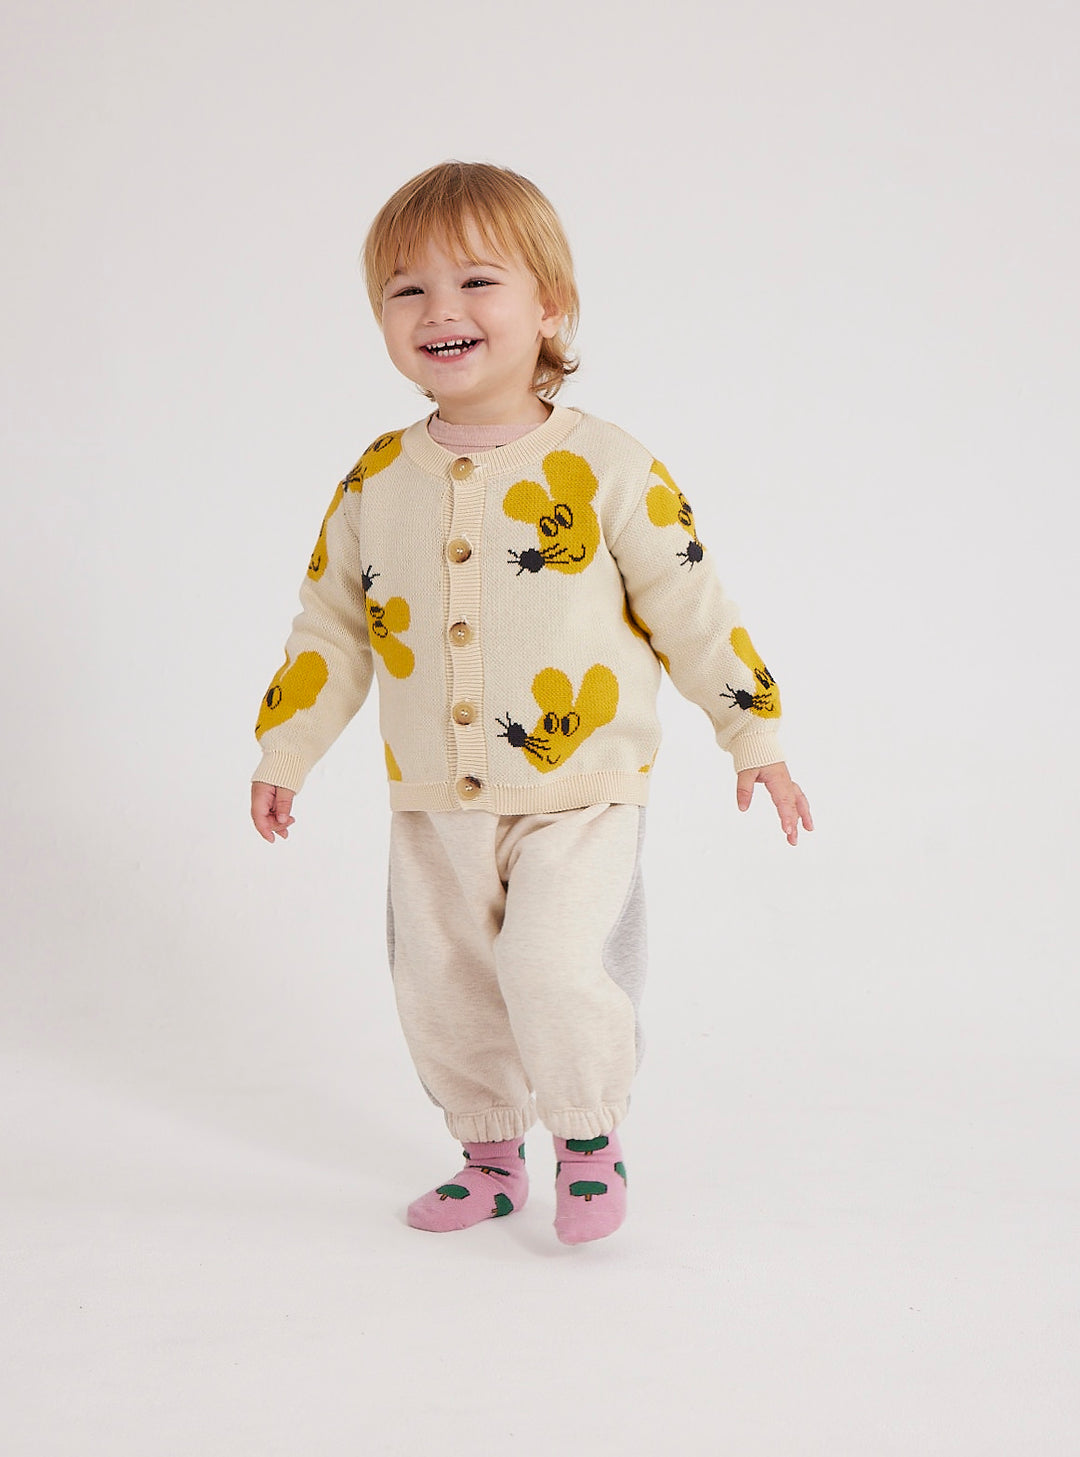 Enfant avec Cardigan en coton bio beige et souris jaunes